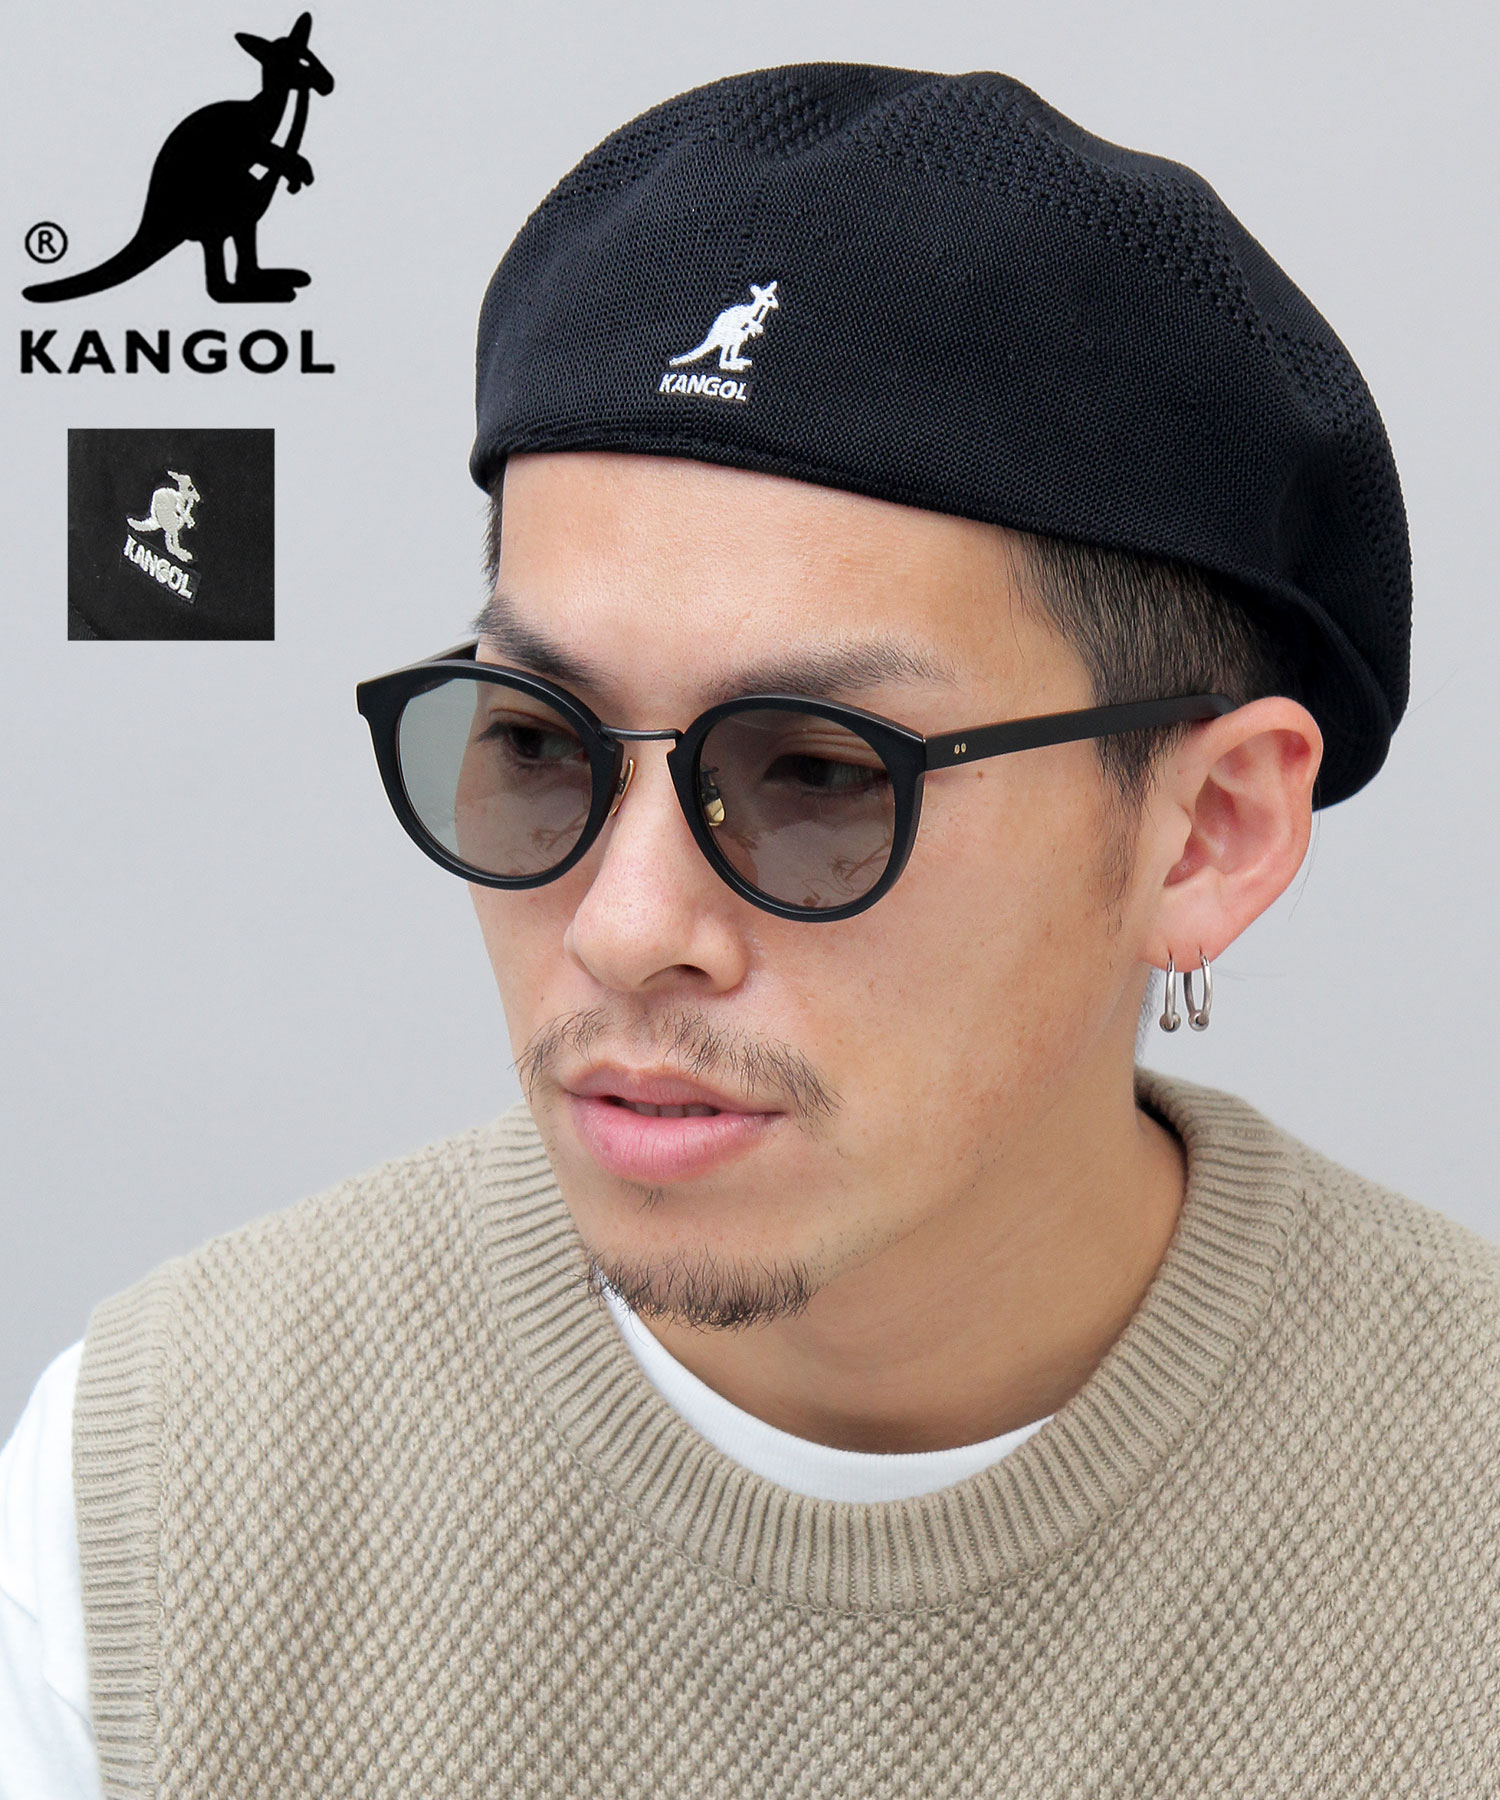 【KANGOL/カンゴール】メッシュハンチングベレー/504/TROPIC VENTAIR/ベレー帽